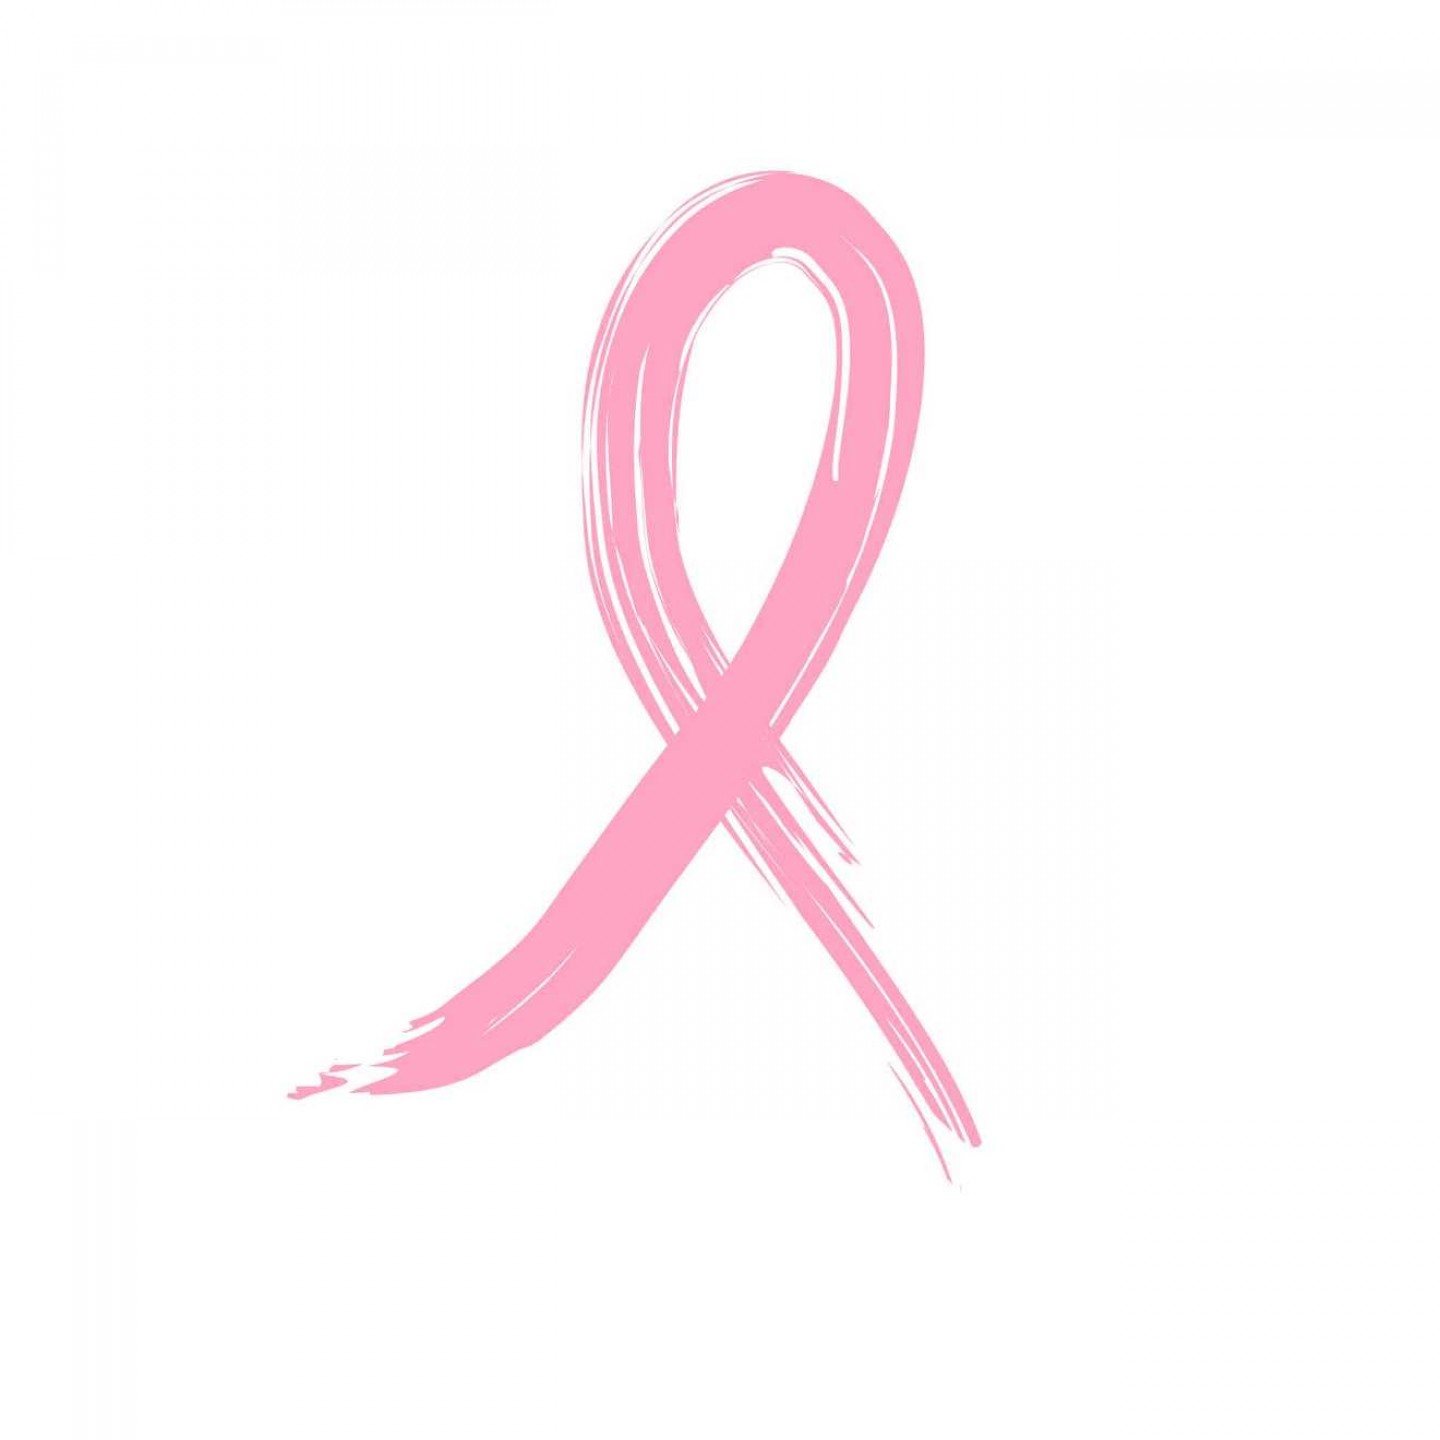 Día Mundial Contra el Cáncer de Mama, más de 200.000 tuits al año sobre este tipo de cáncer